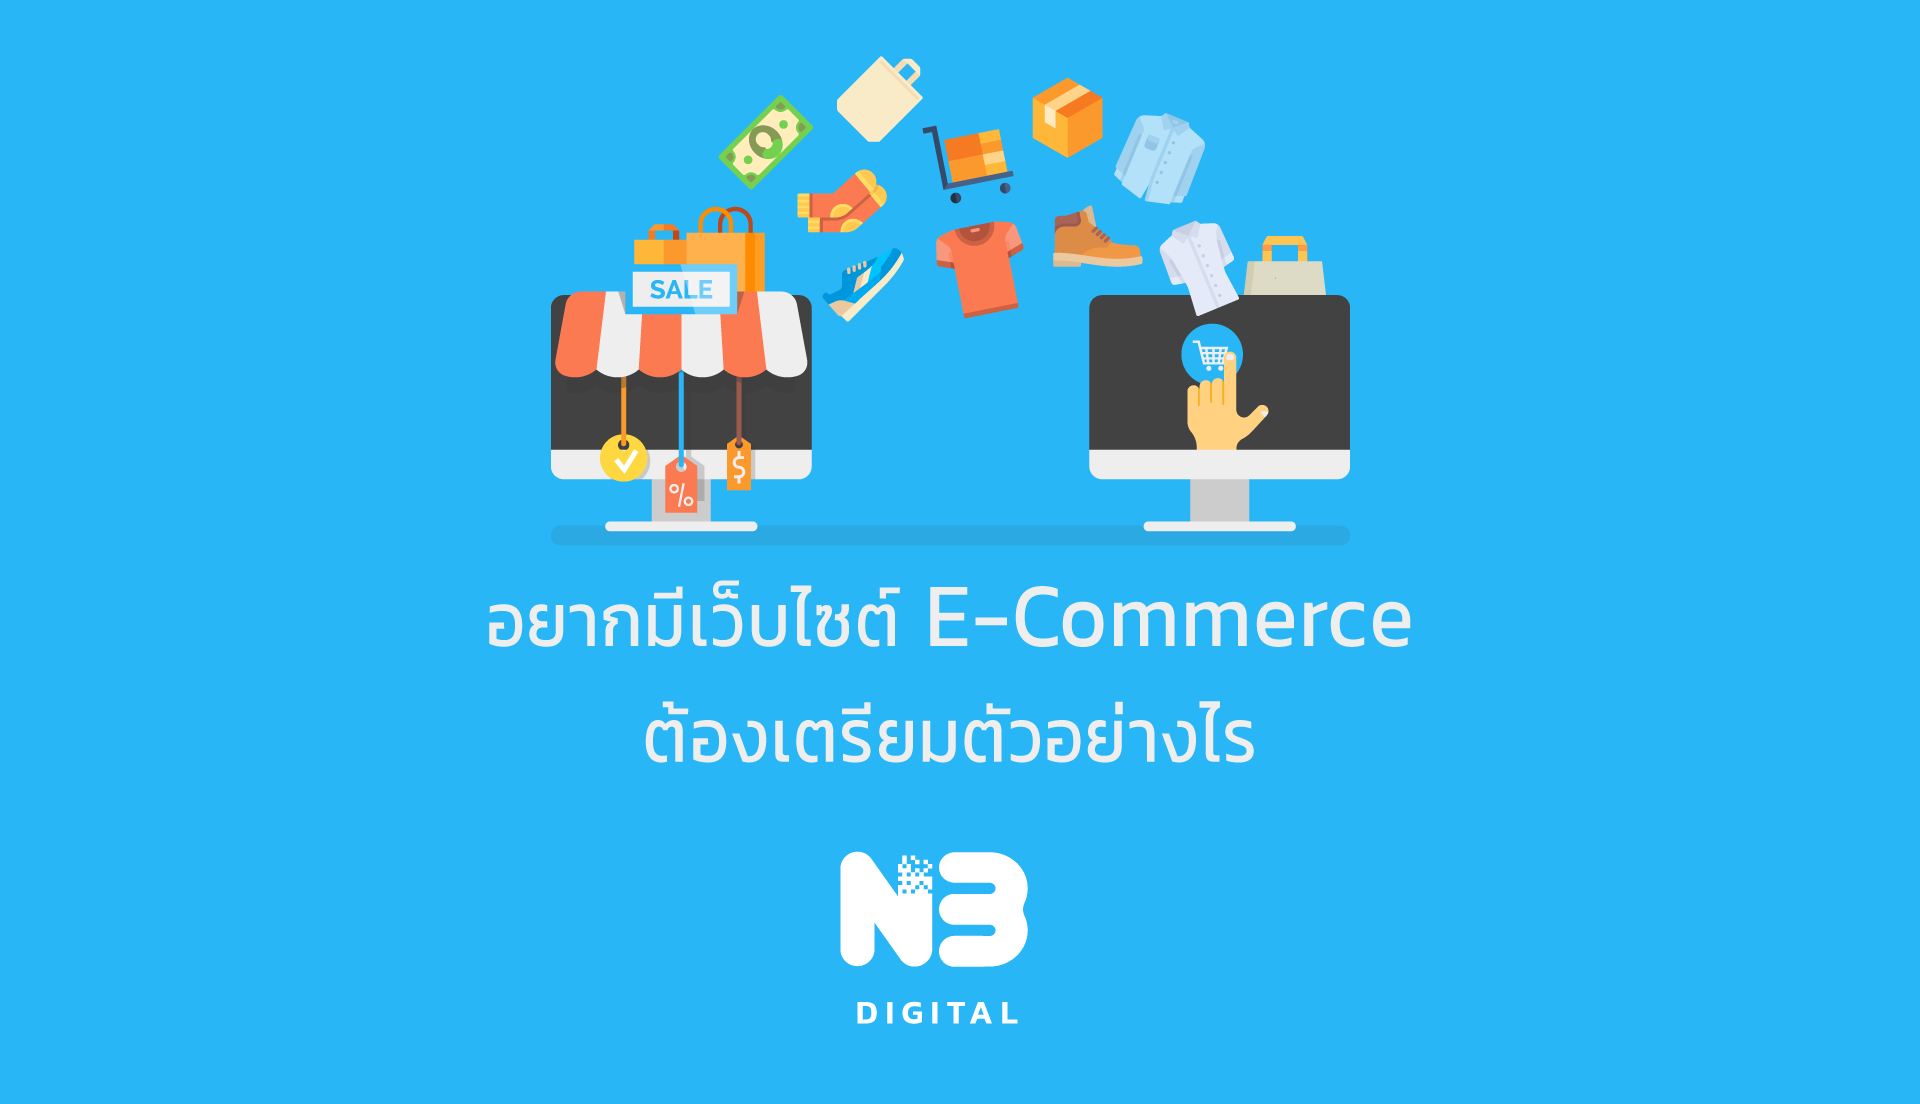 อยากเริ่มต้นทำเว็บไซต์ E-Commerce ต้องเตรียมตัวอย่างไร 